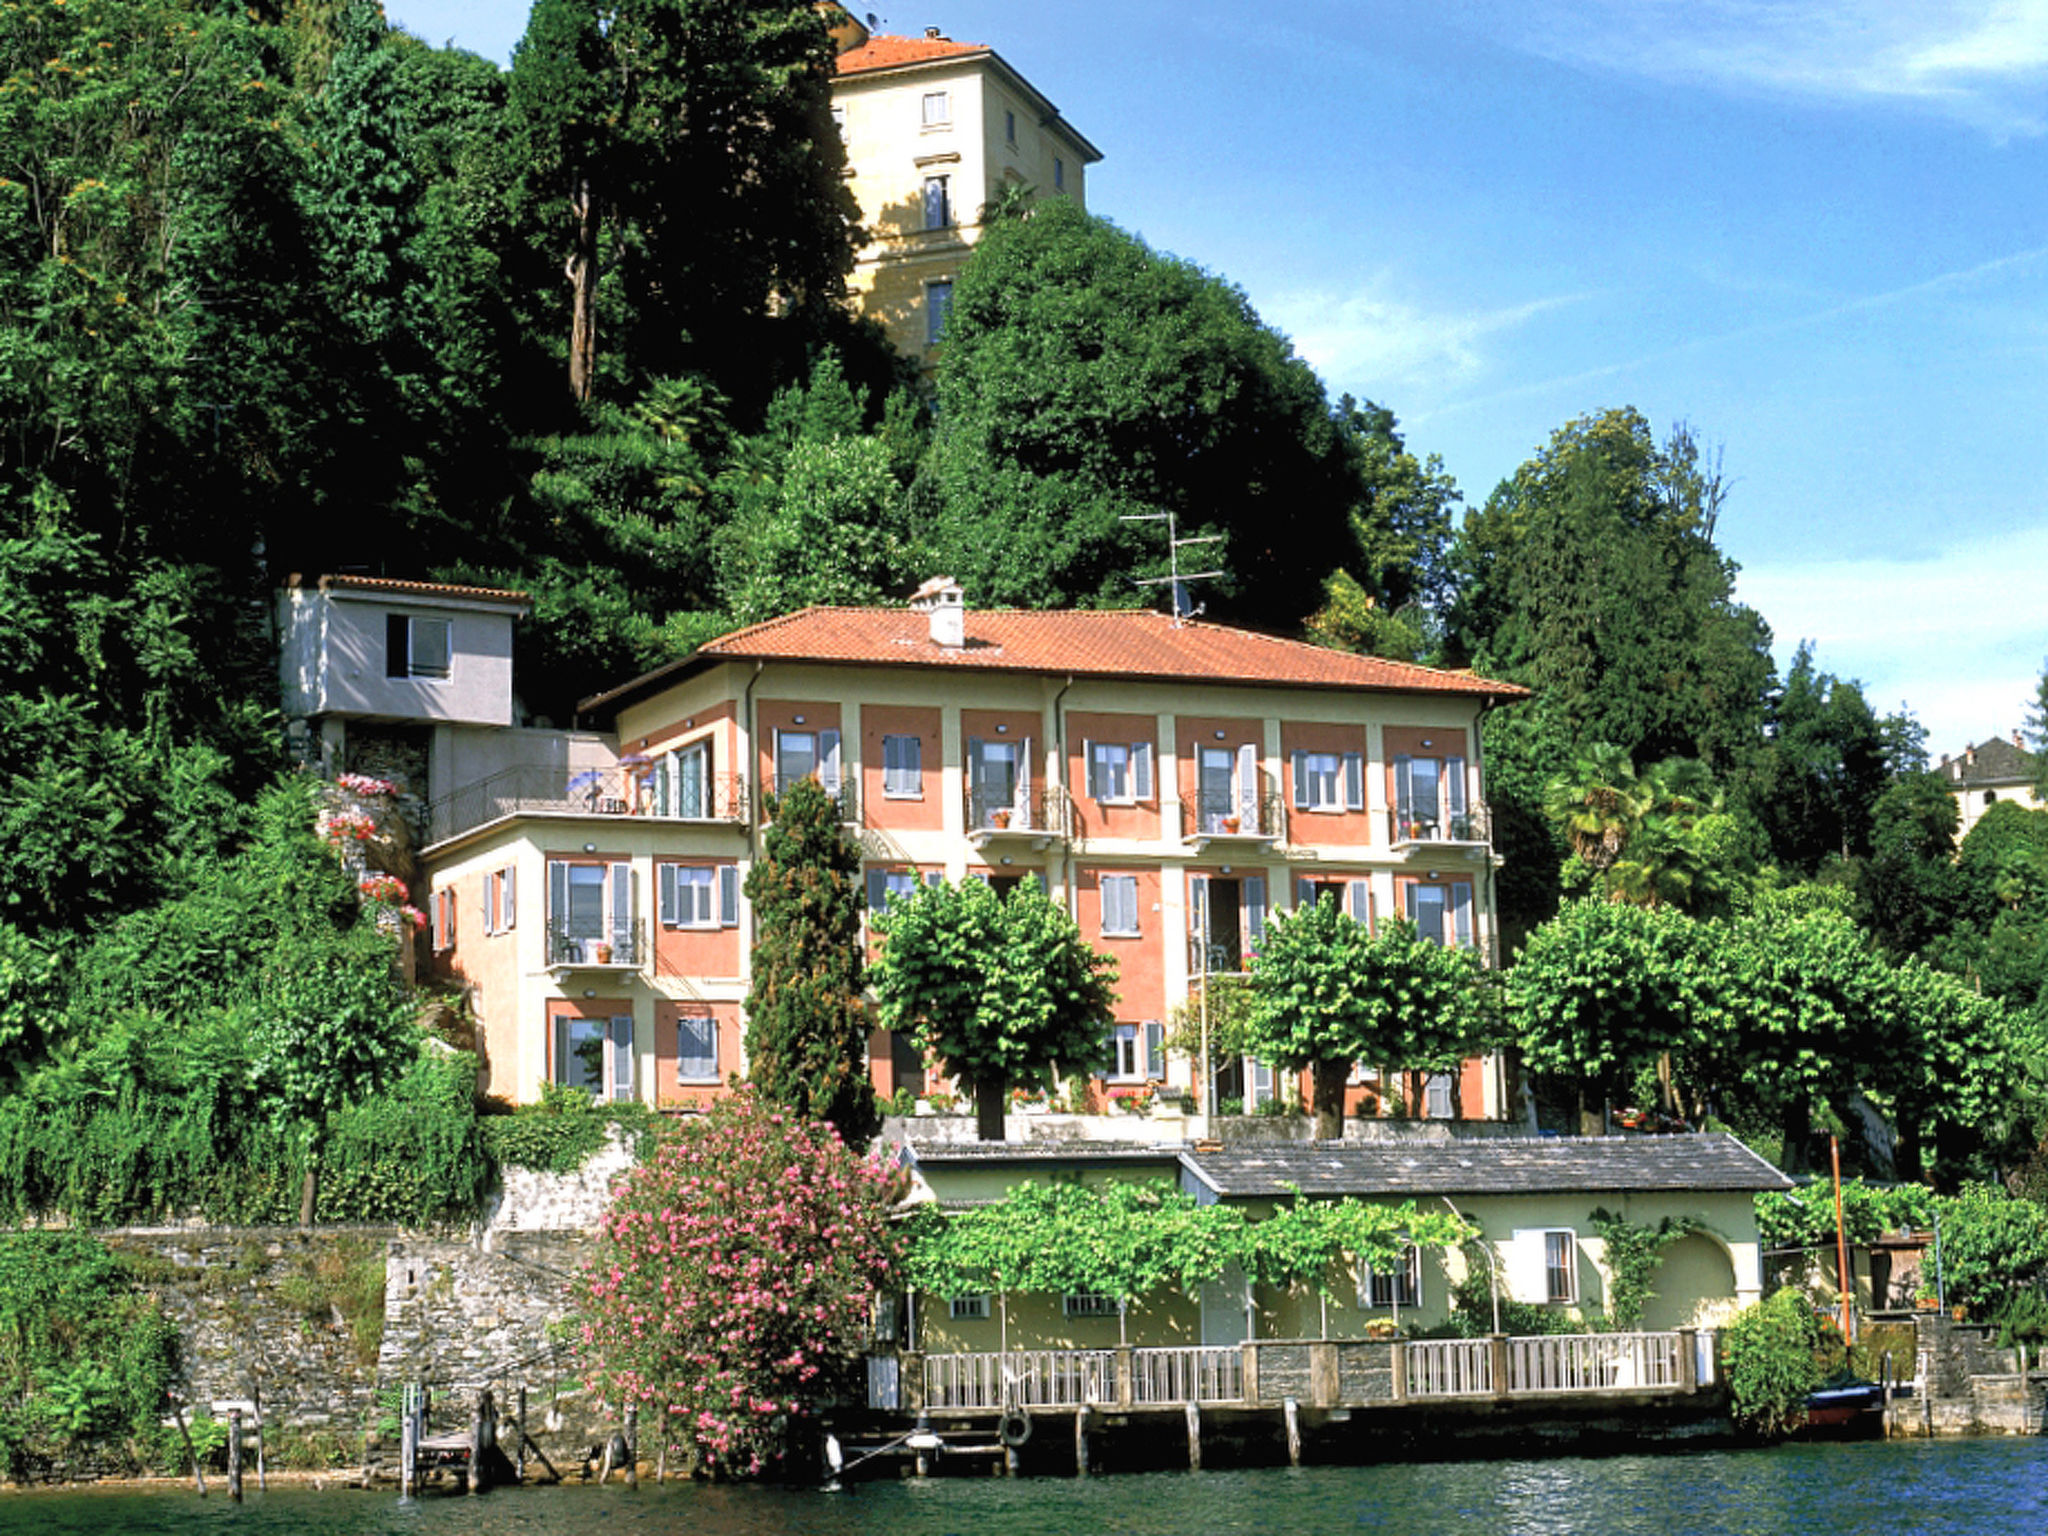 Casa sul lago Orta San Giulio - Orta San Giulio